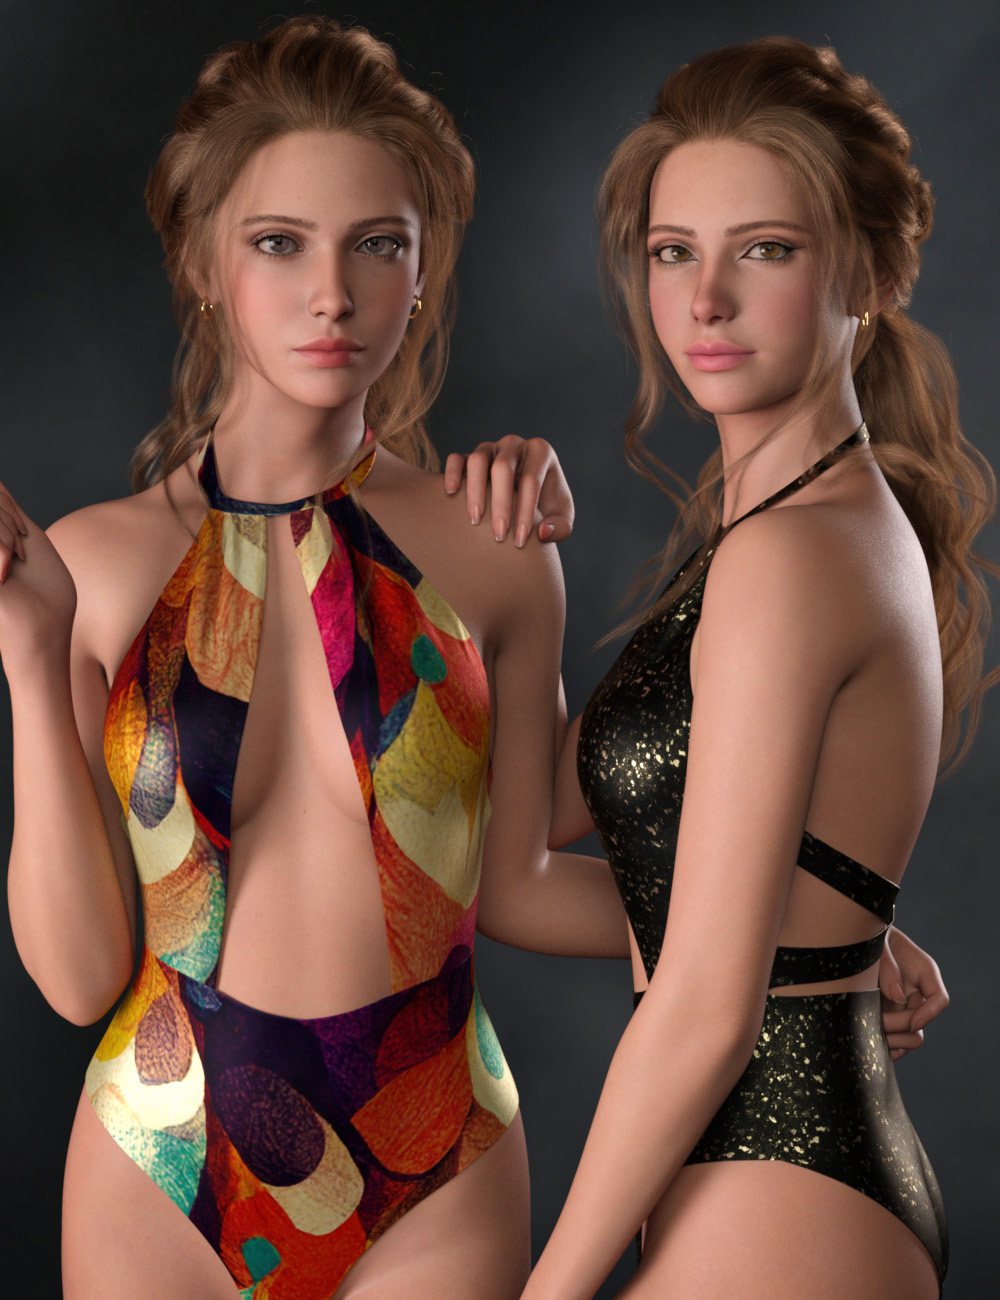 CHB Elegant Bodysuit and Earrings Texture Add-on by: Cherubit, 3D Models by Daz 3D